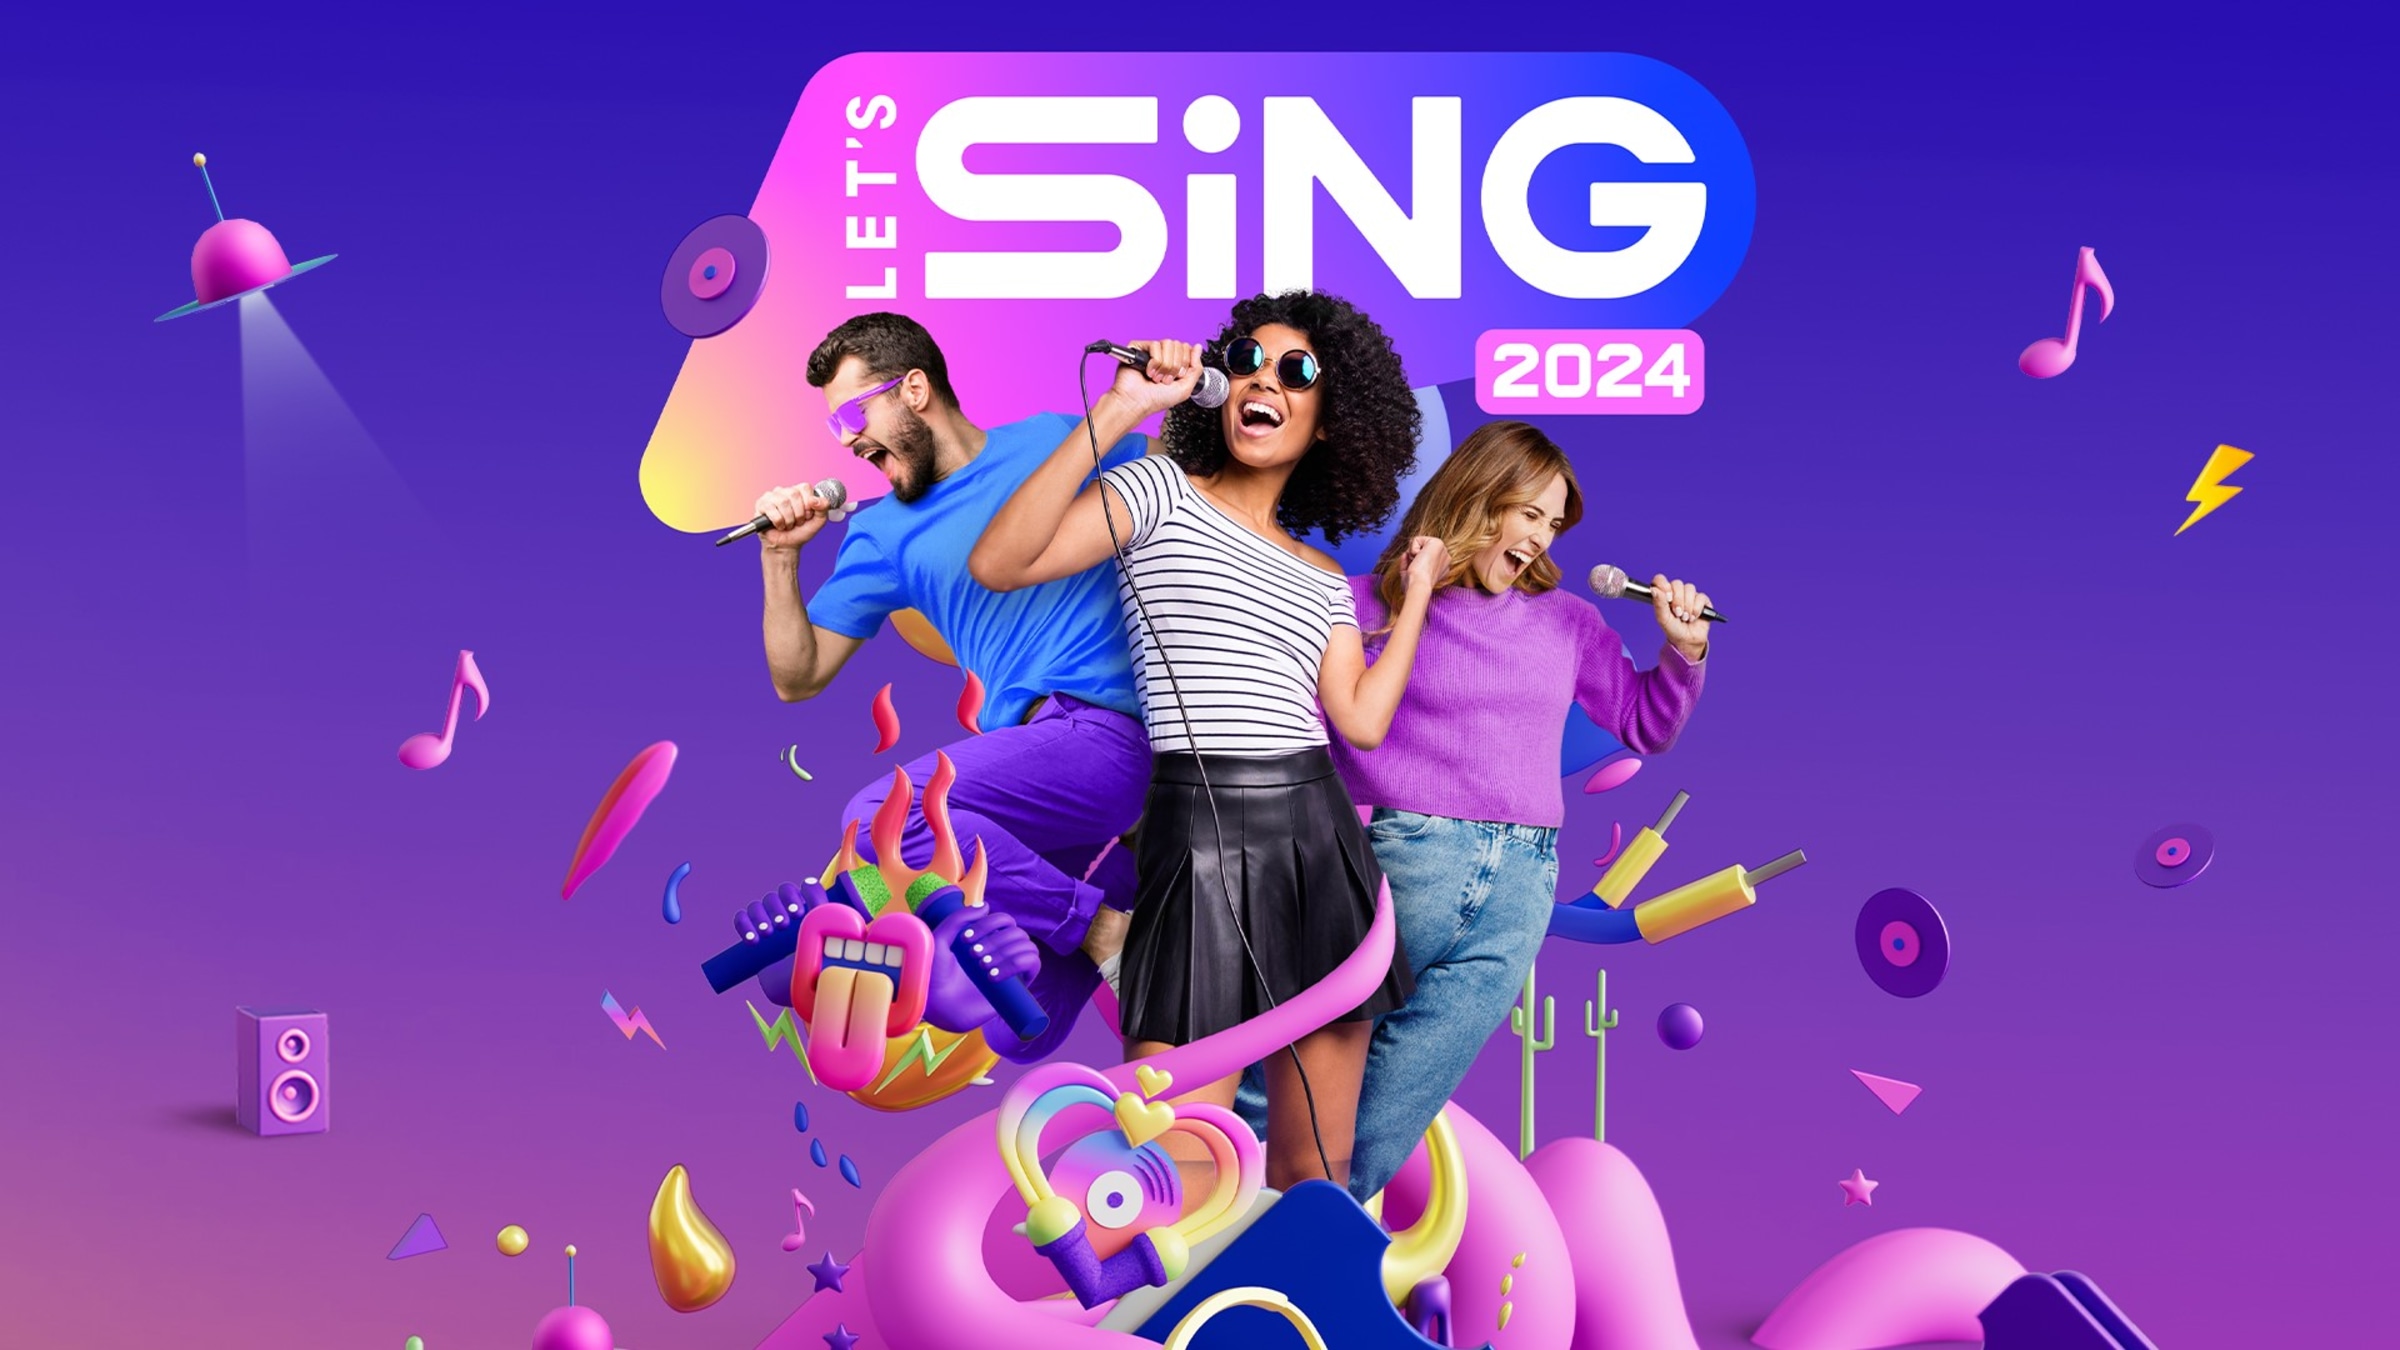 Nintendo Switch Let's Sing 2024 +1 mic